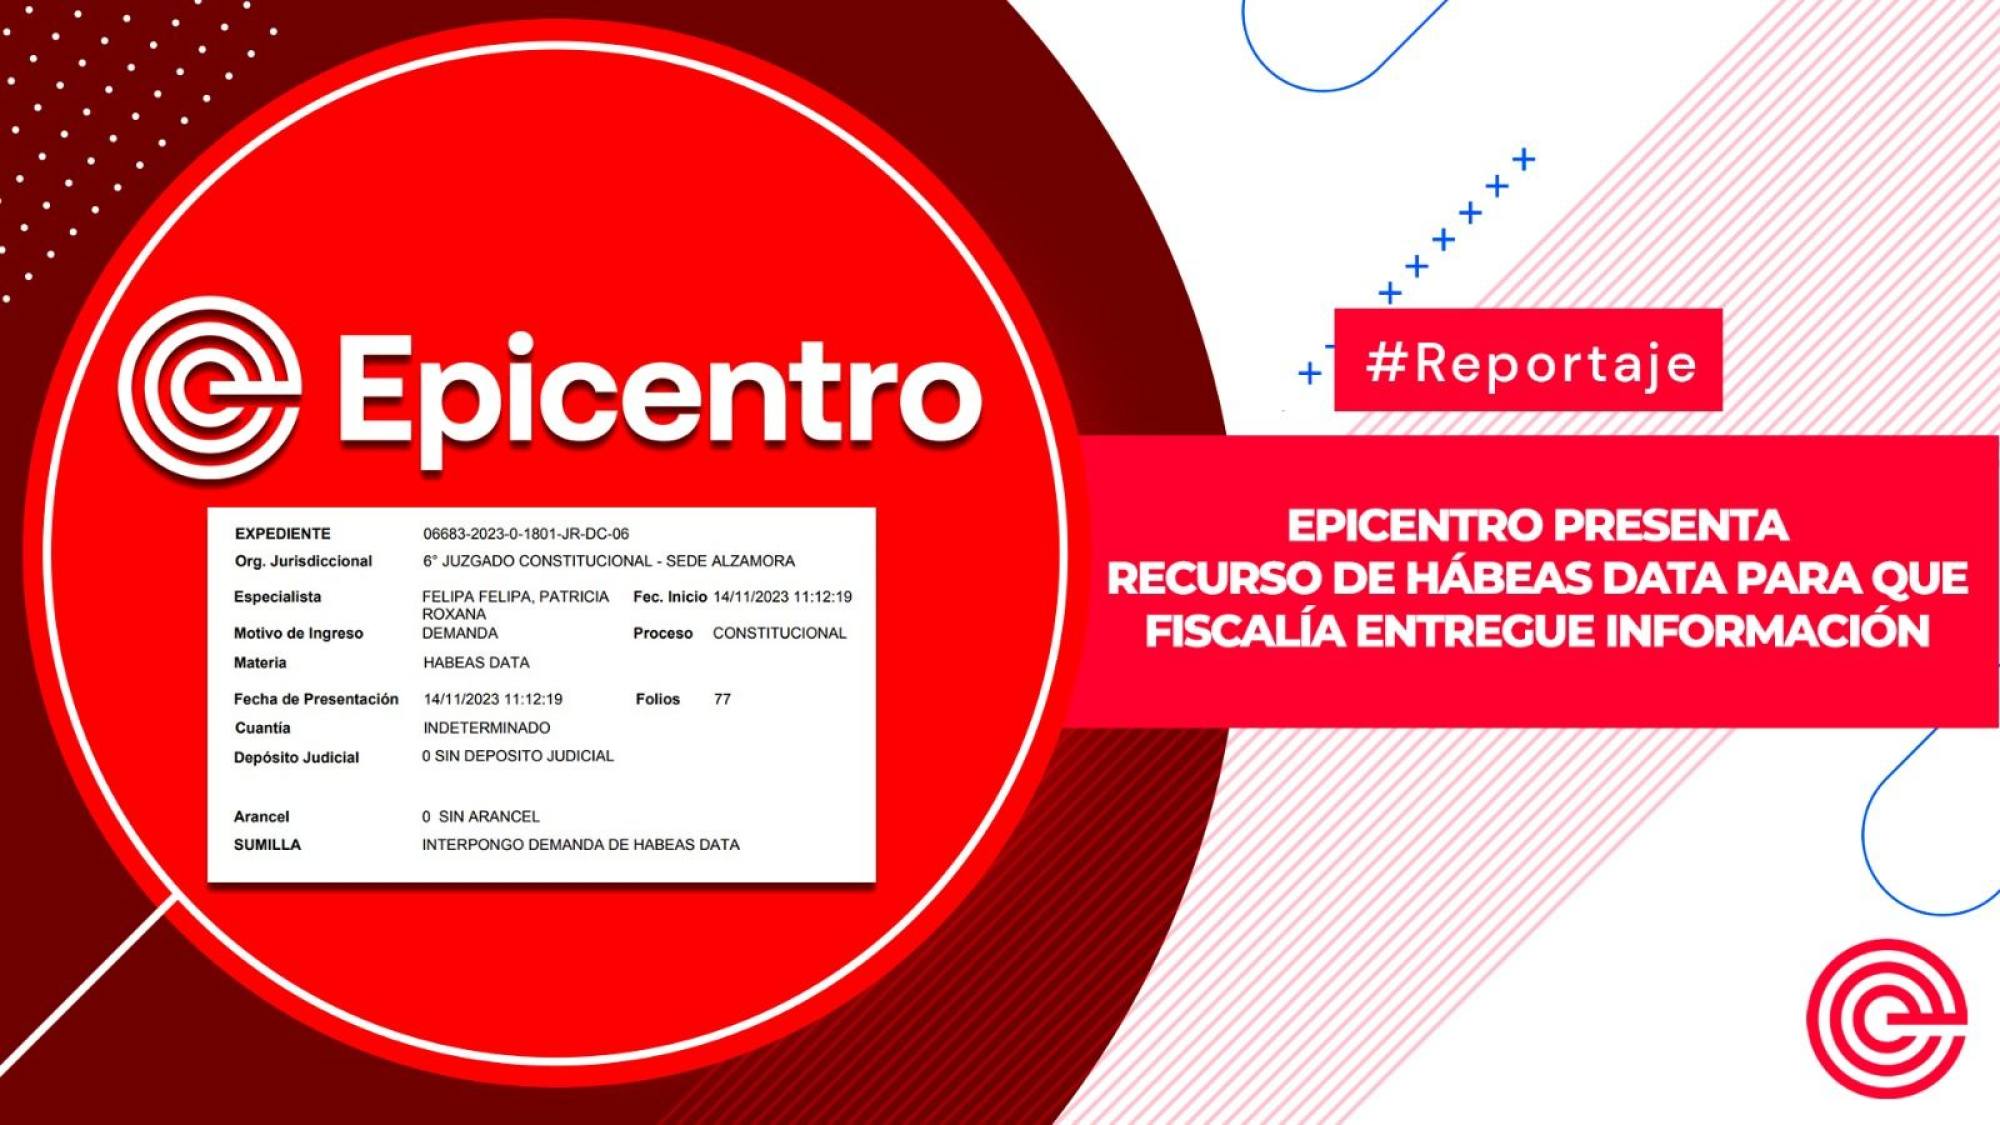 Epicentro presenta recurso de hábeas data  para que Fiscalía entregue información, Epicentro TV